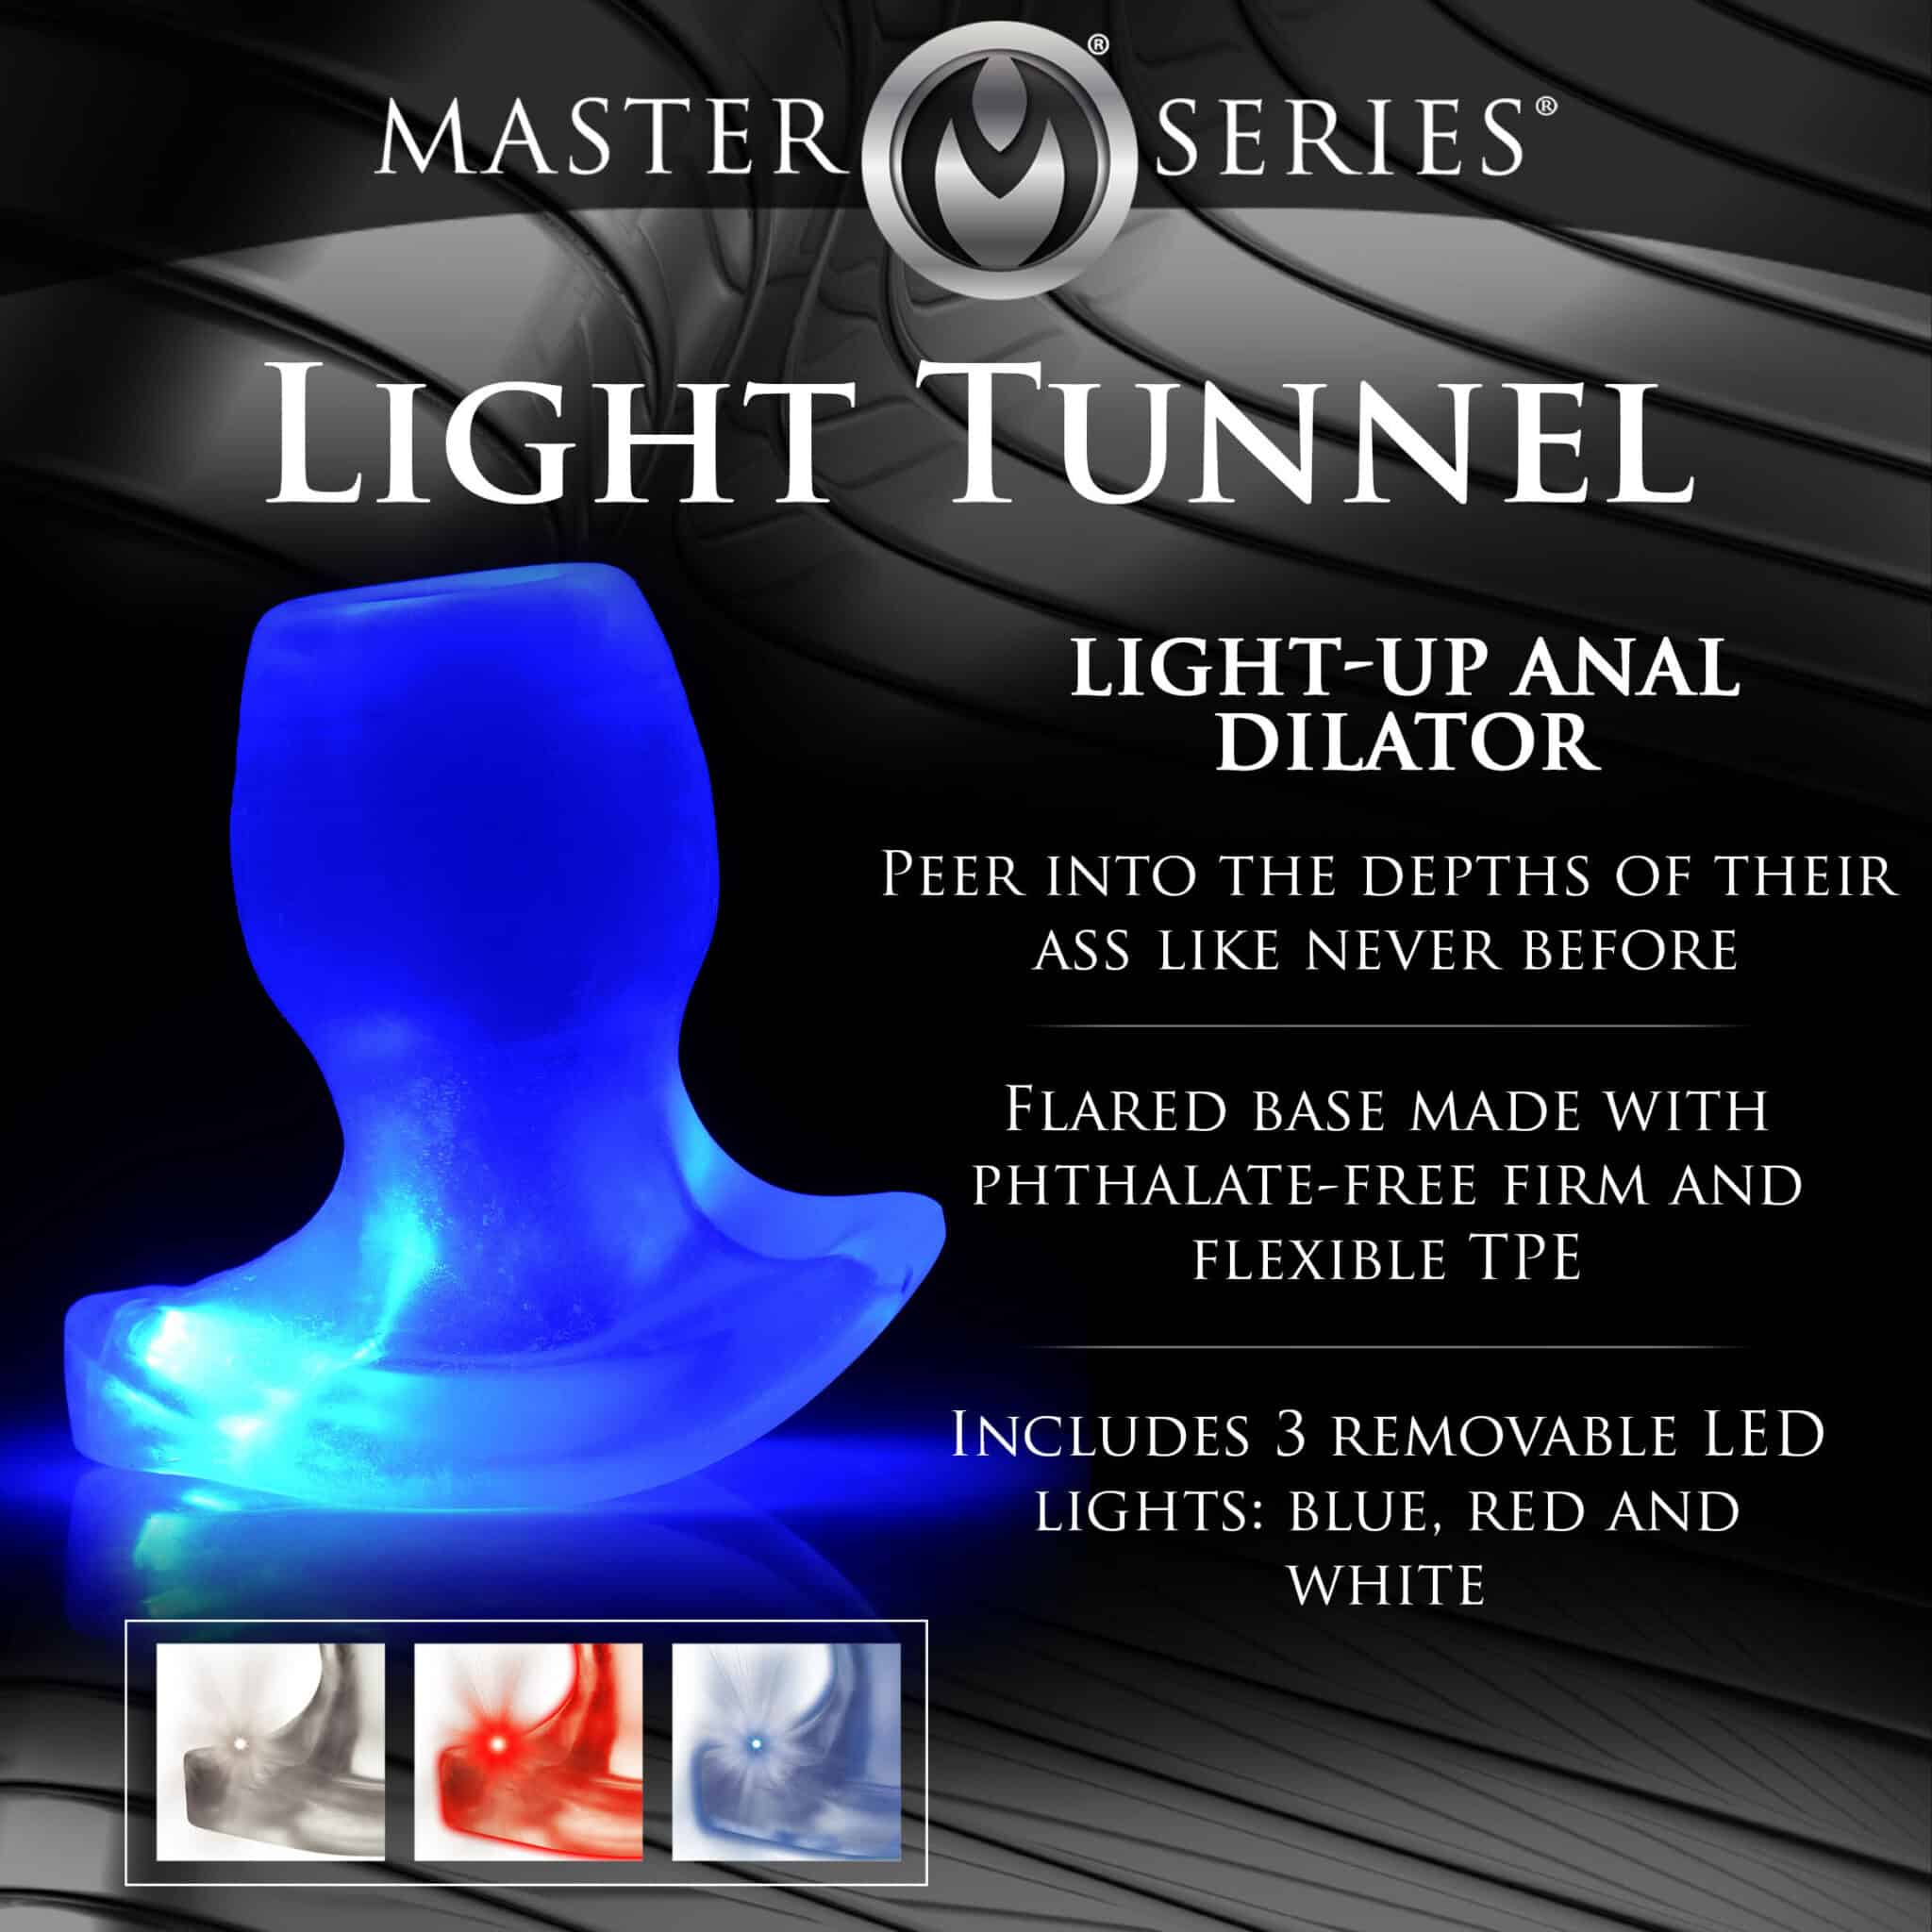 Light-Tunnel Light-Up Anal Dilator – Medium